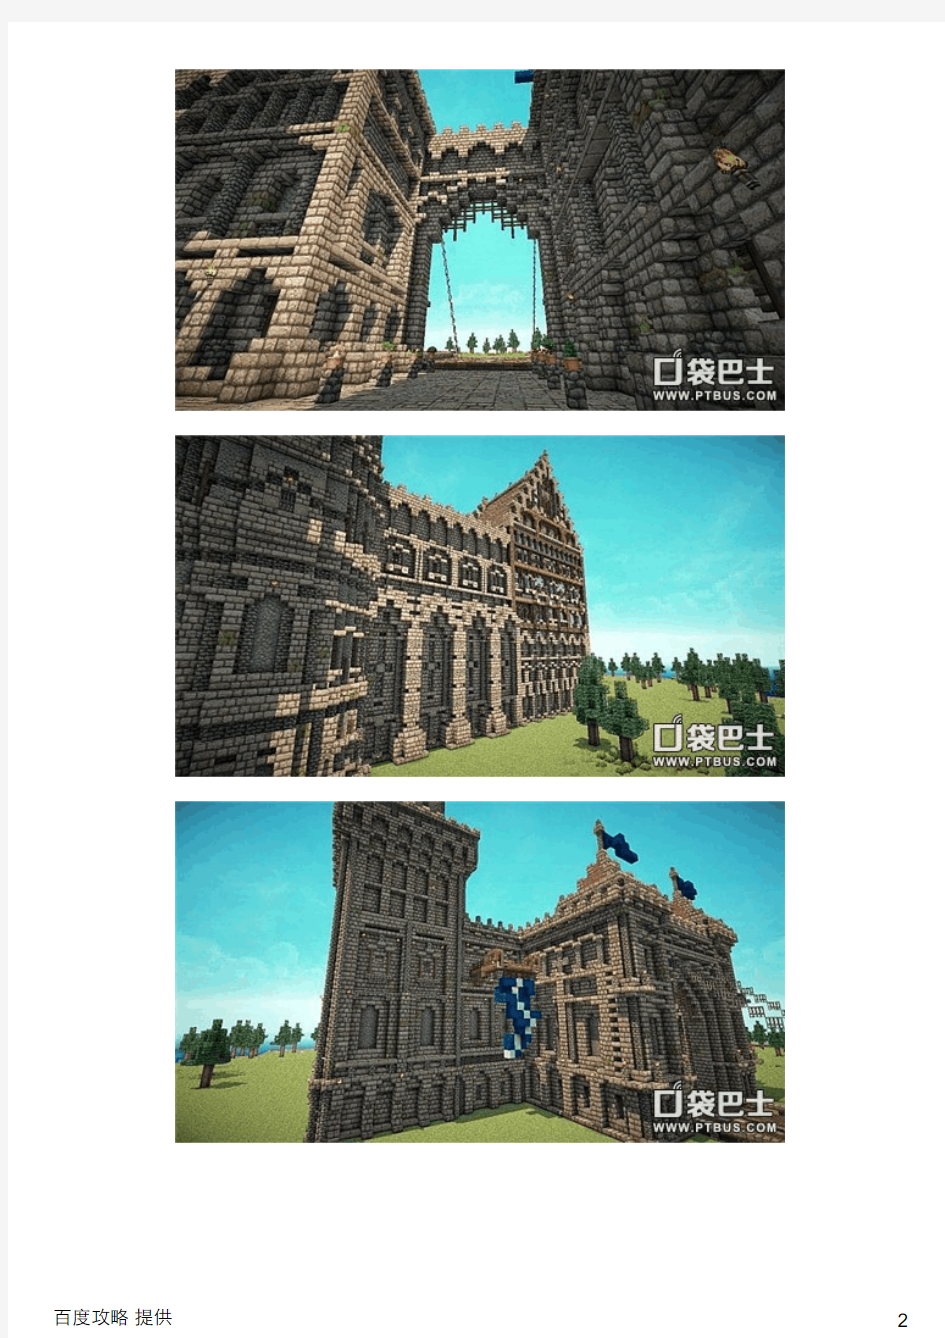 我的世界大神制作中世纪城堡建筑作品展示